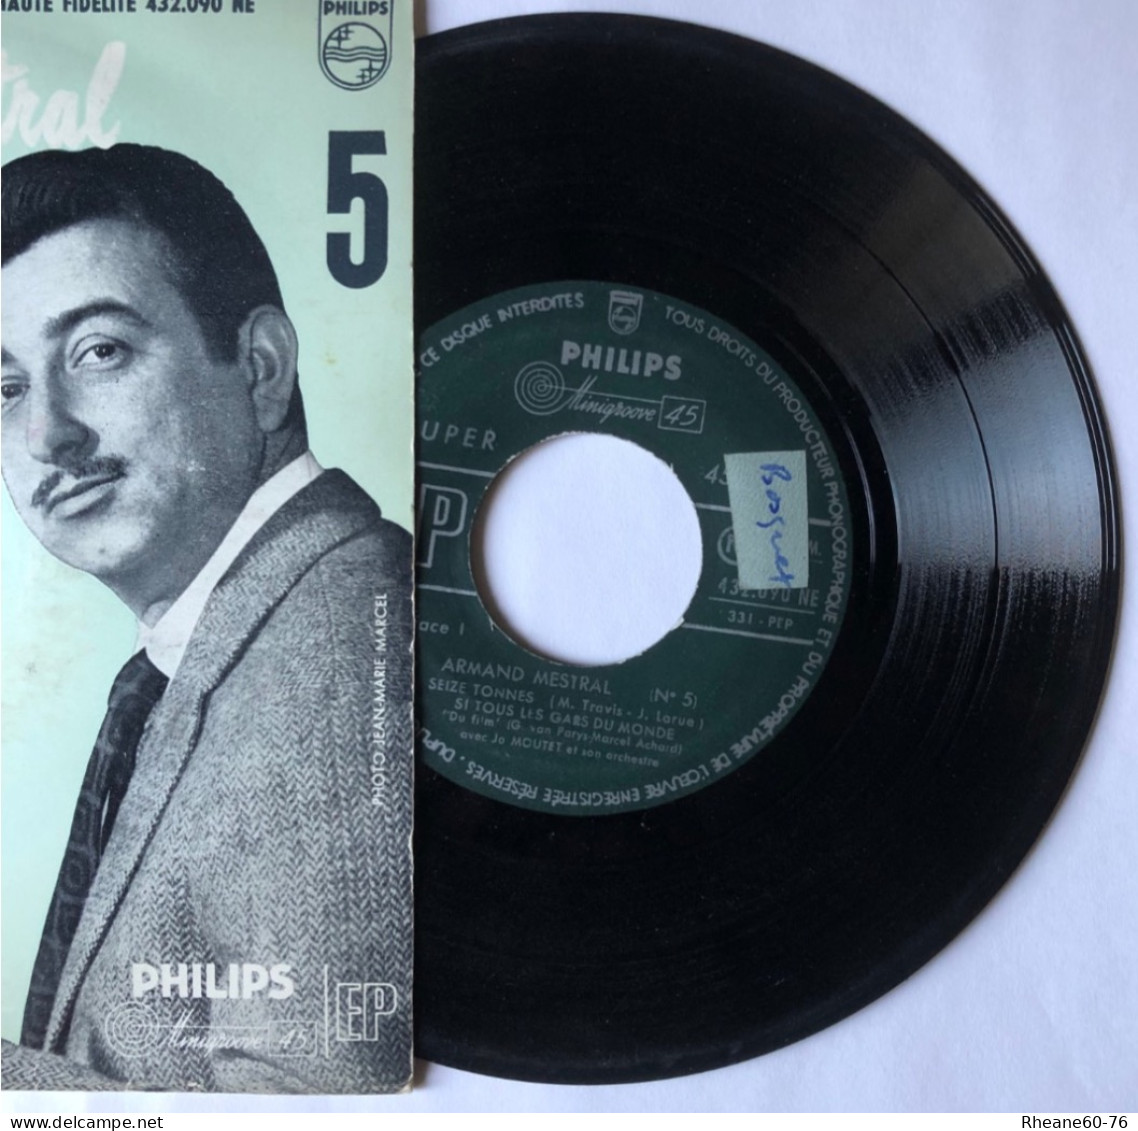 Philips 432.090 NE - 45T EP - Armand Mestral Avec Jo Moutet Et Son Orchestre - Microsillon Médium Haute Fidélité - Formatos Especiales